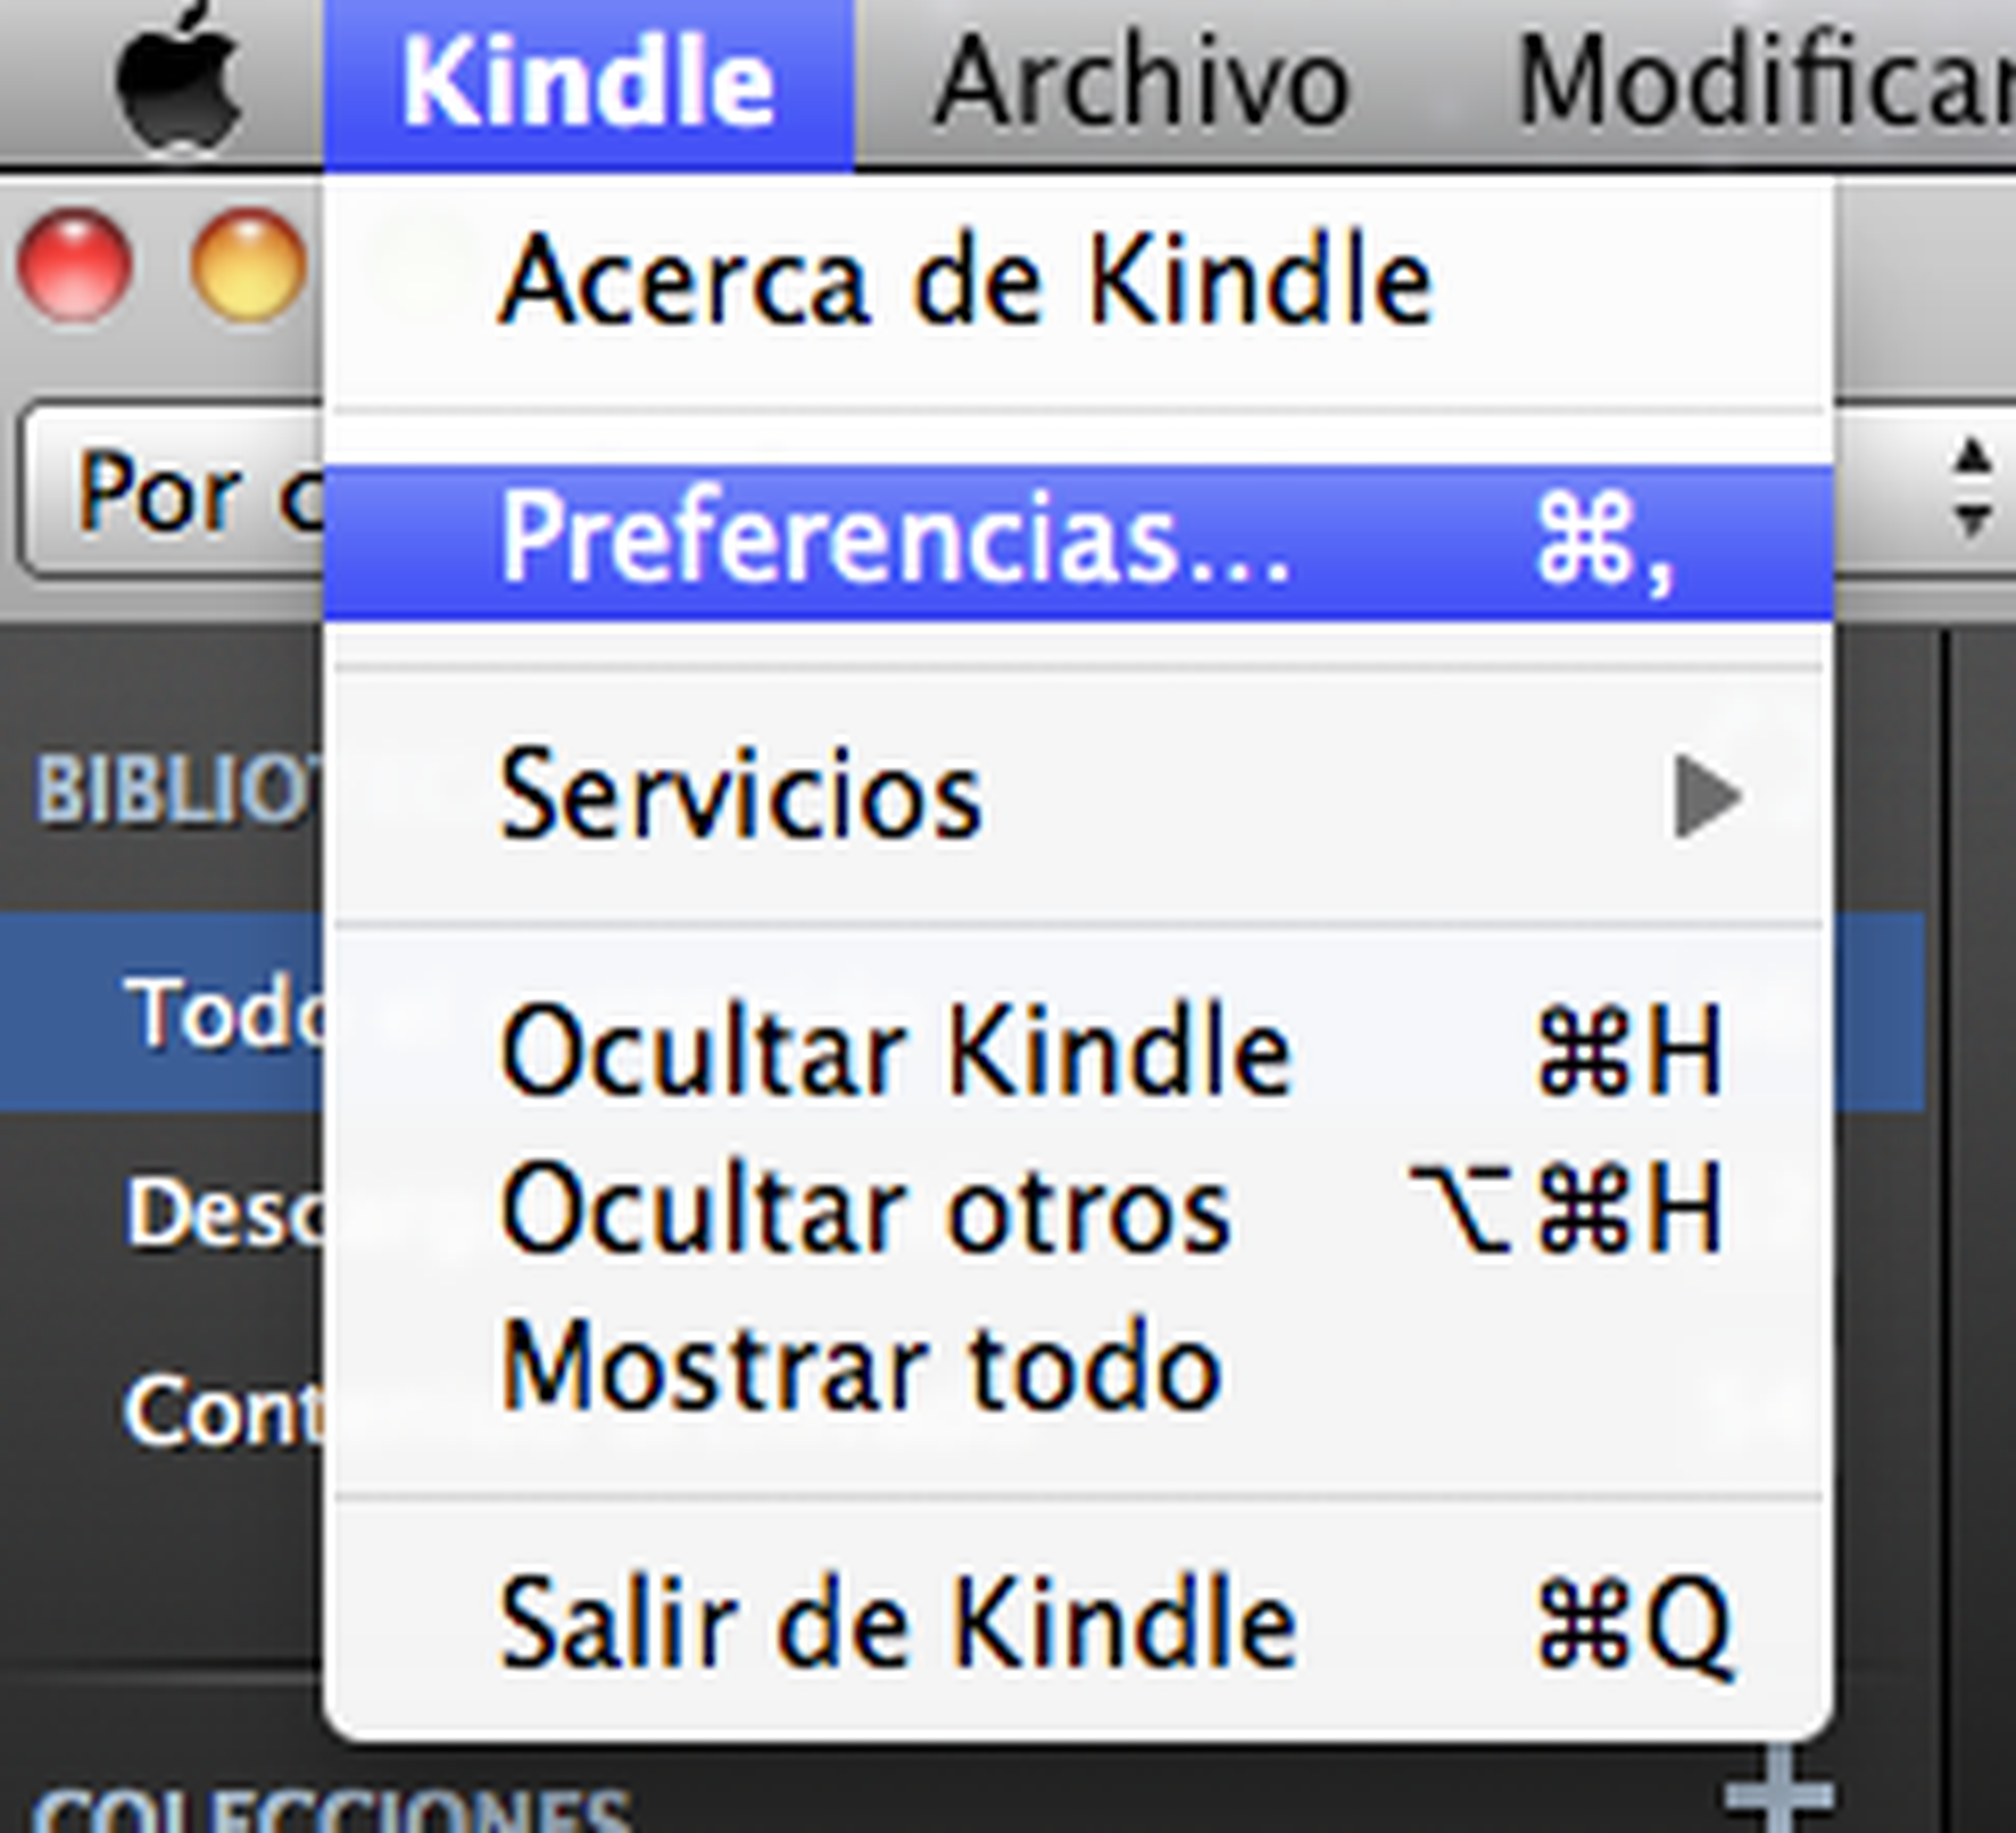 Preferencias Kindle